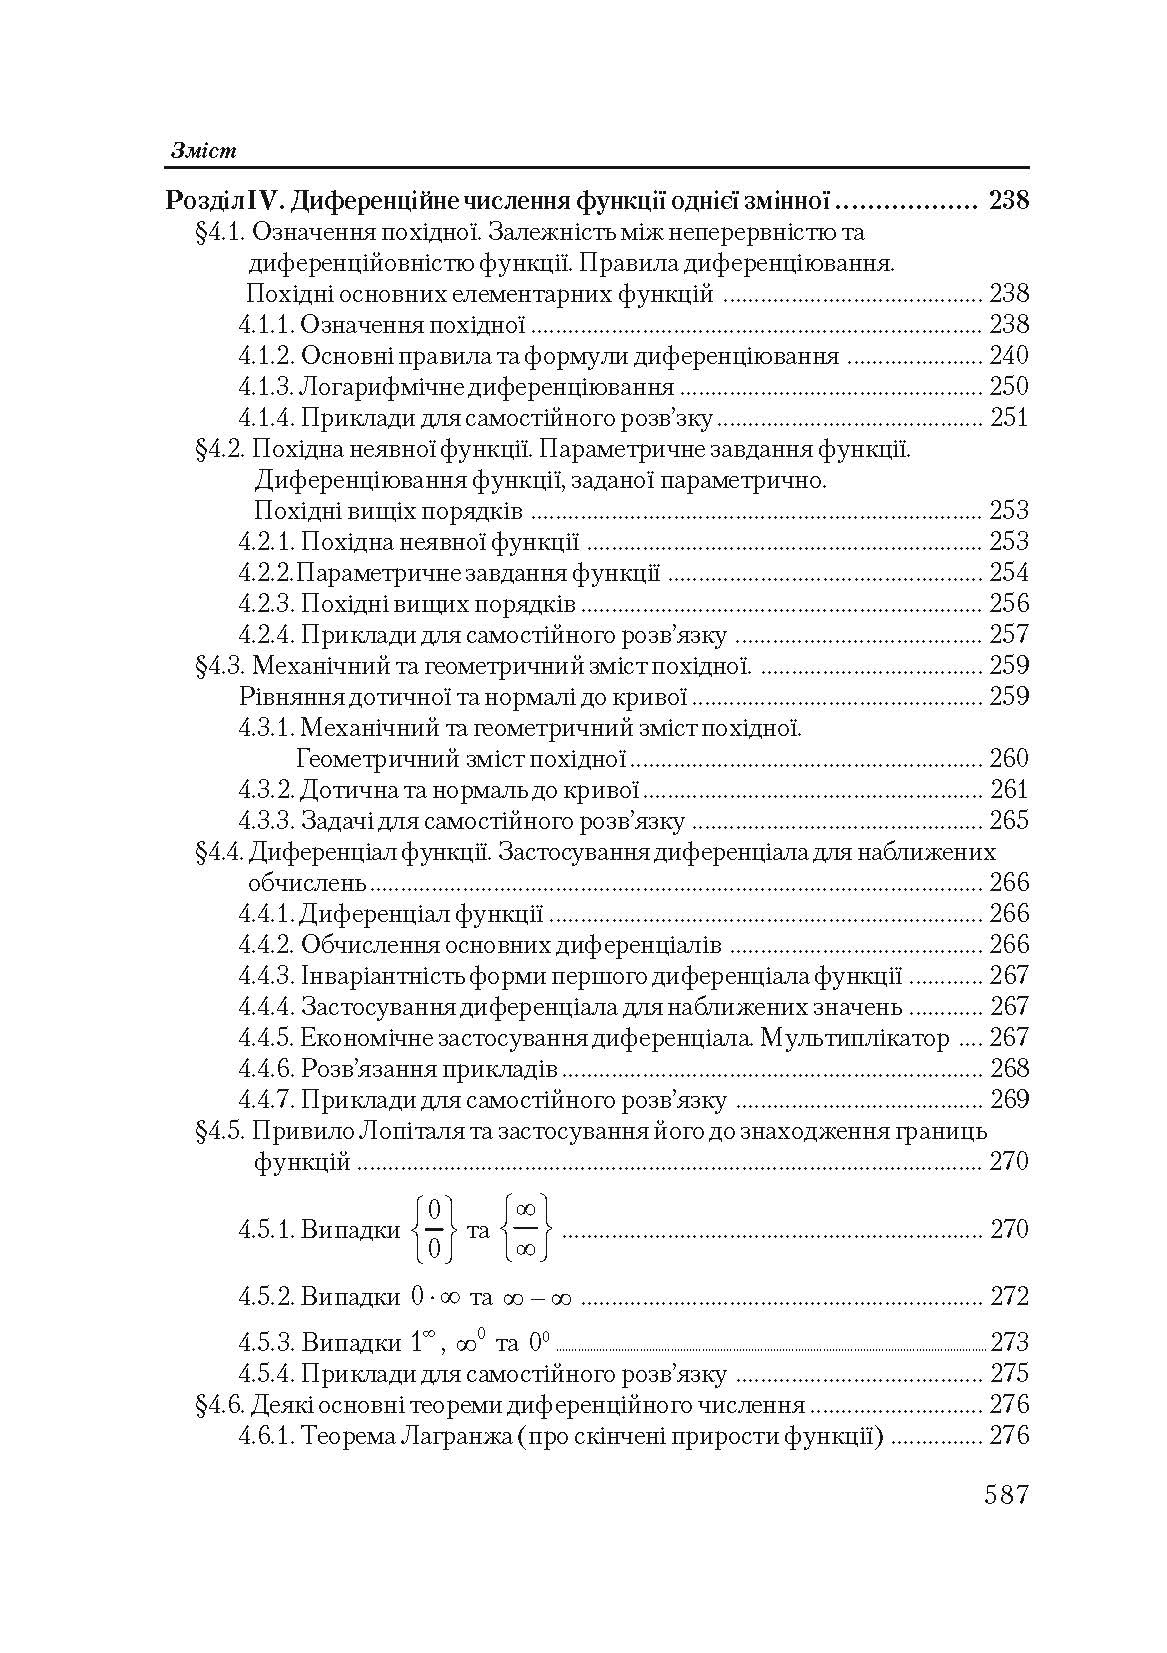 Вища математика в прикладах і задачах. 2-ге видання.  (2020 год). . 